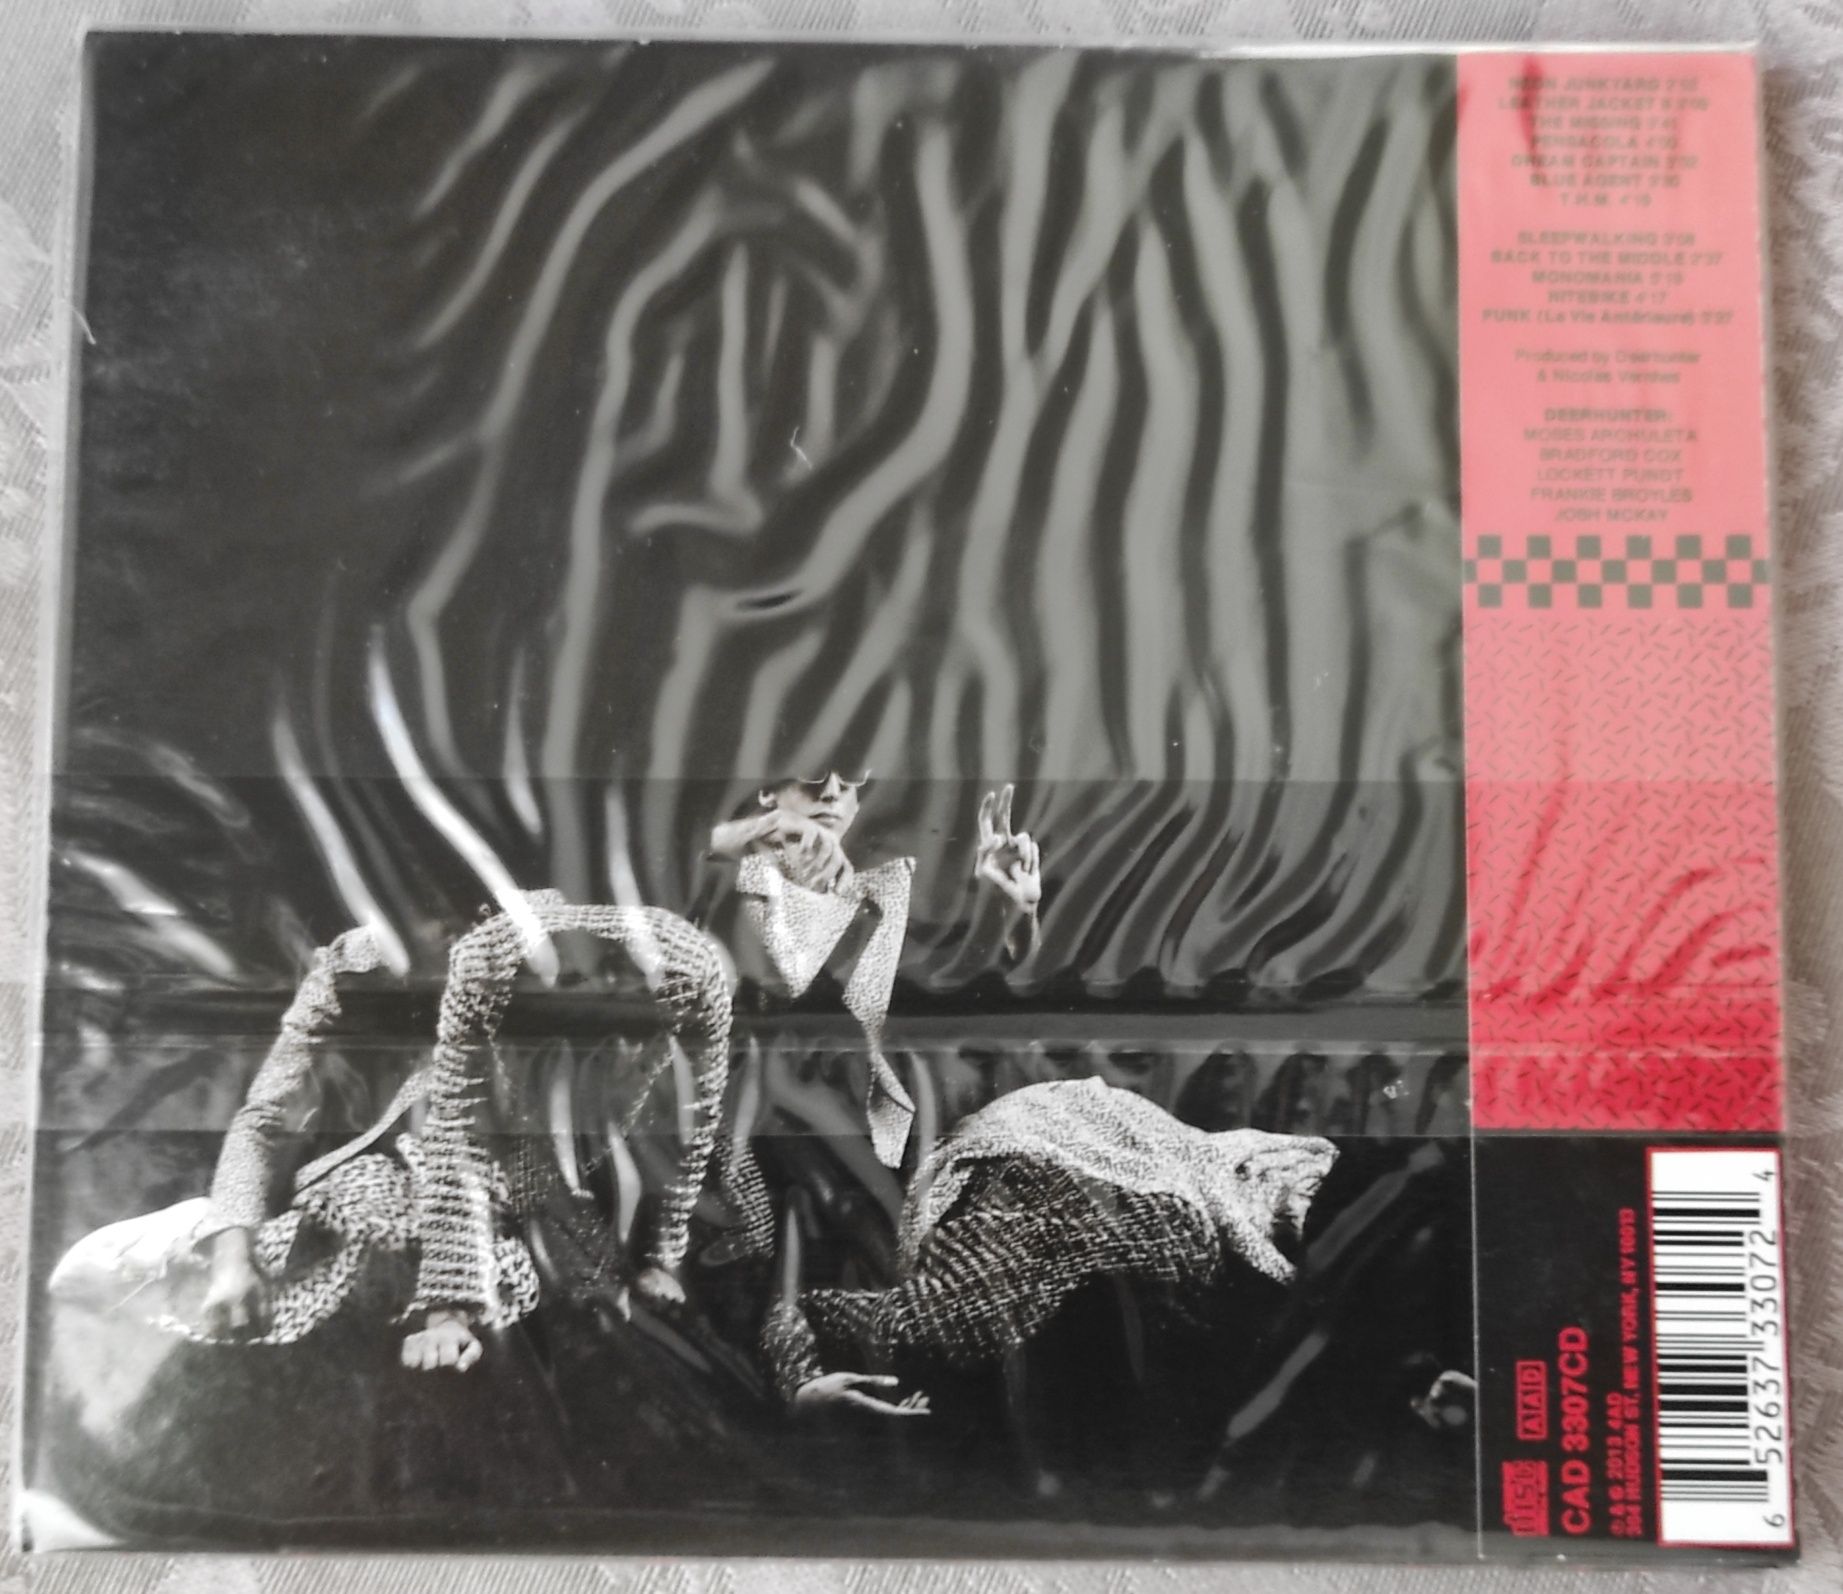 Deerhunter - Monomania - CD Novo